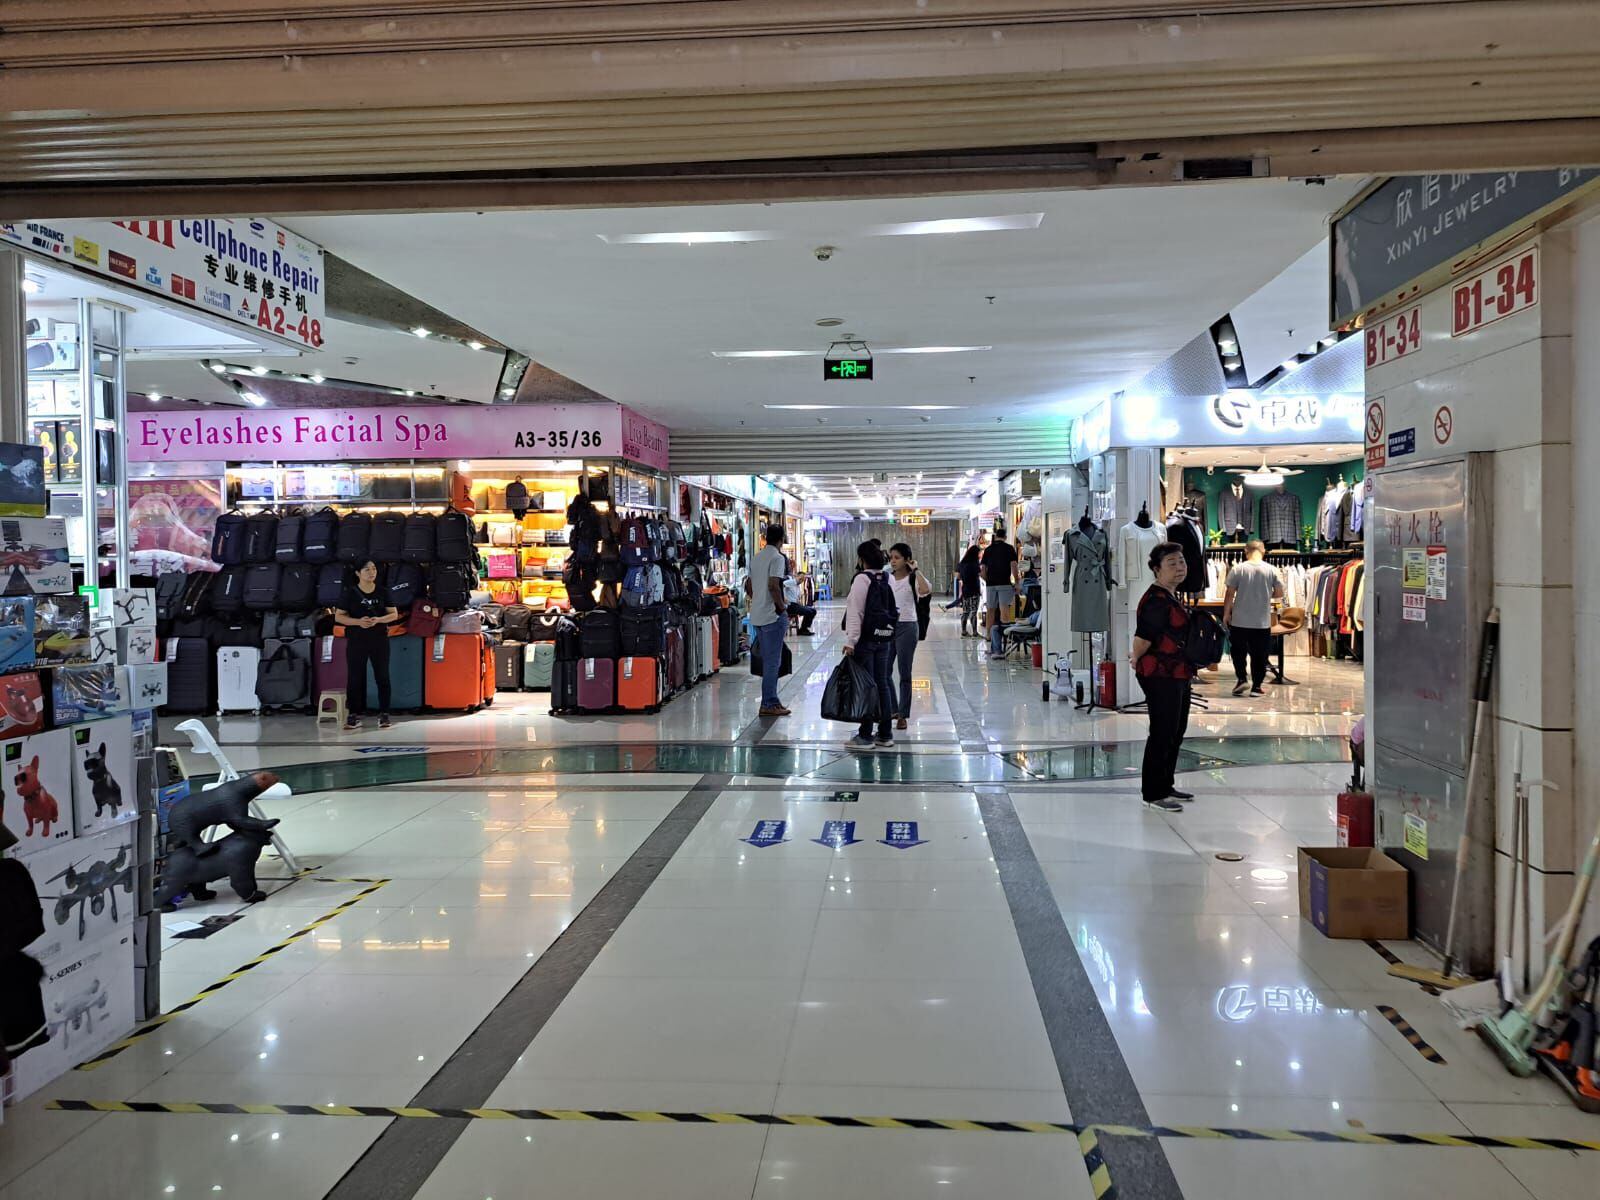 Una zona comercial de Shanghái, donde acuden turistas y regatean por los precios.